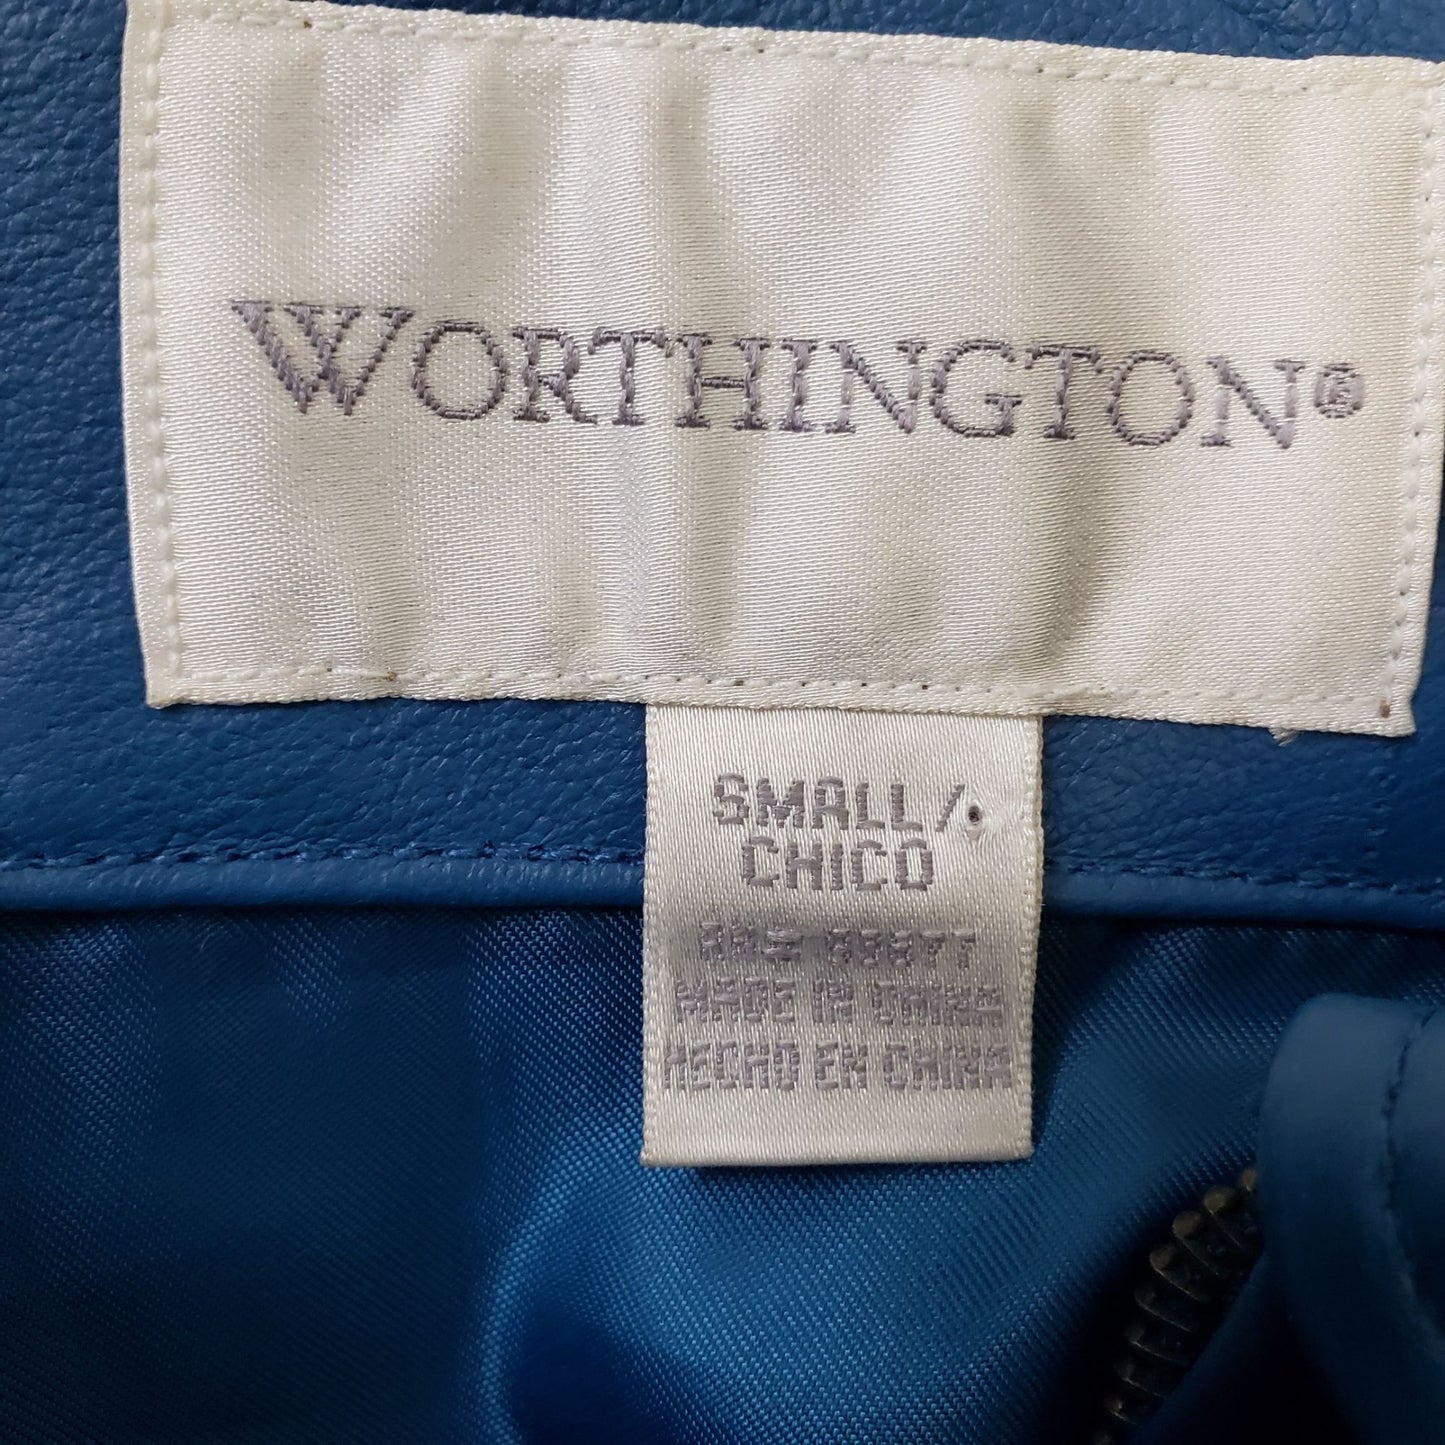 Worthington 100% Leather Full Zip Jacket Size Small